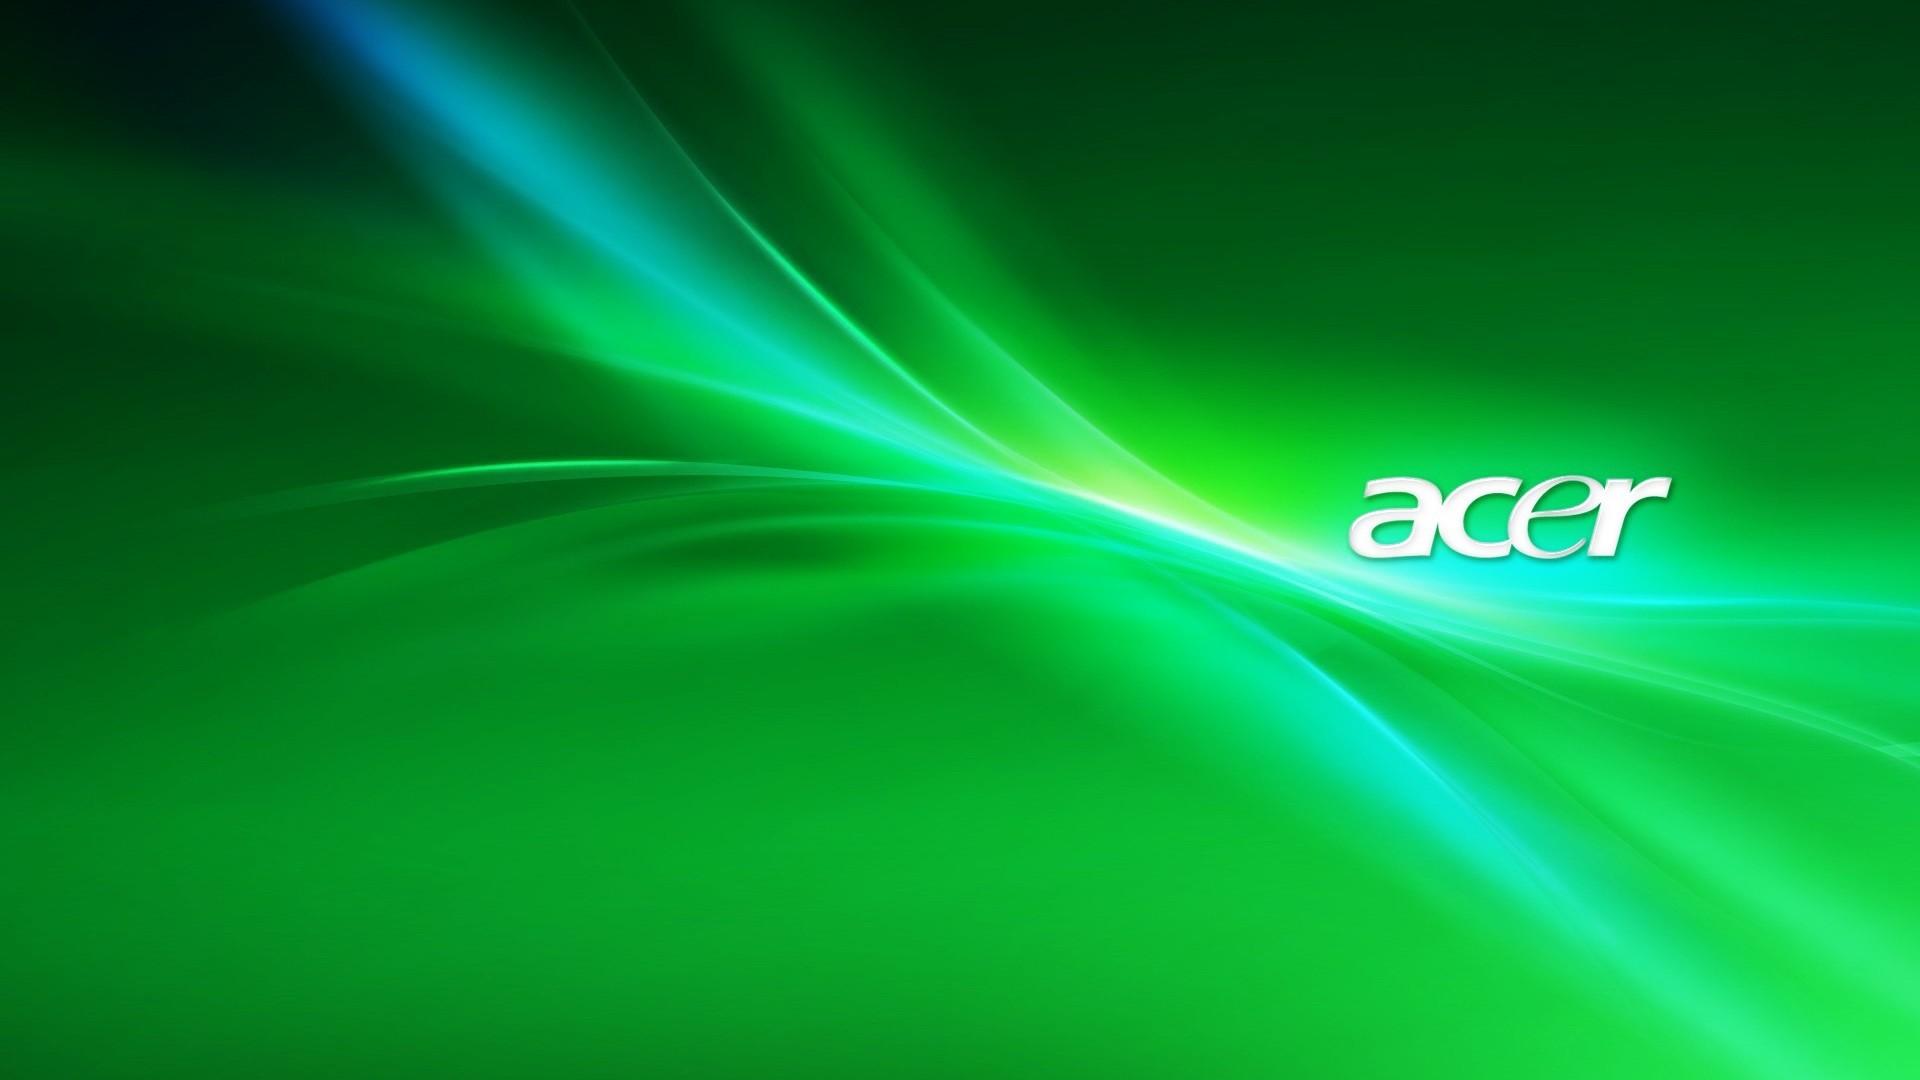 1920x1080 Acer hd green wallpaper - Wallpaper - Wallpaper Style